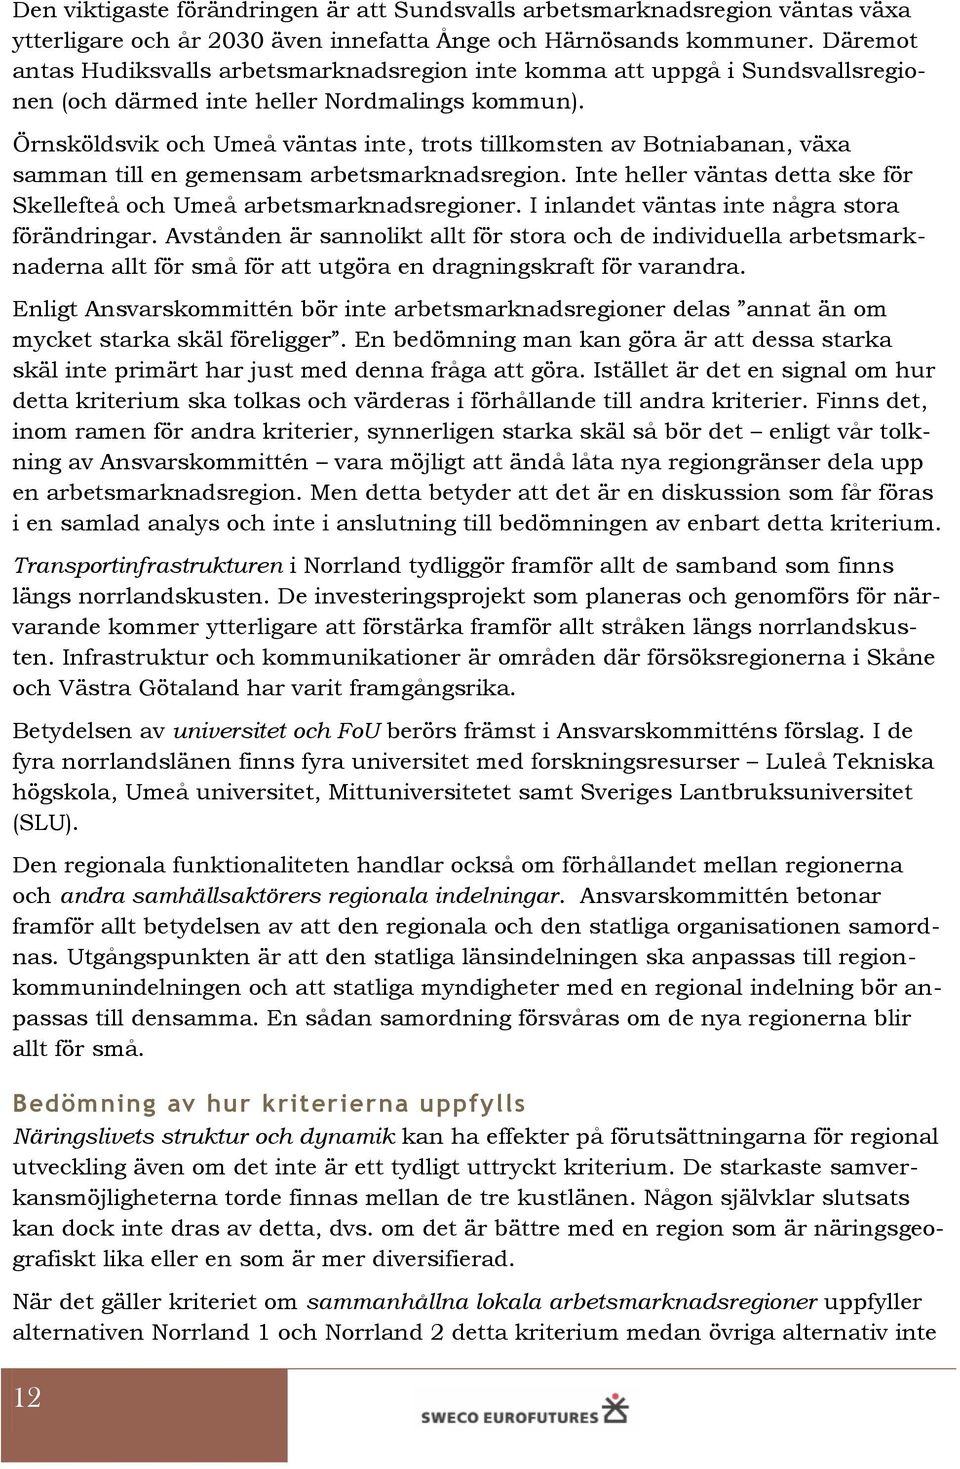 Örnsköldsvik och Umeå väntas inte, trots tillkomsten av Botniabanan, växa samman till en gemensam arbetsmarknadsregion. Inte heller väntas detta ske för Skellefteå och Umeå arbetsmarknadsregioner.